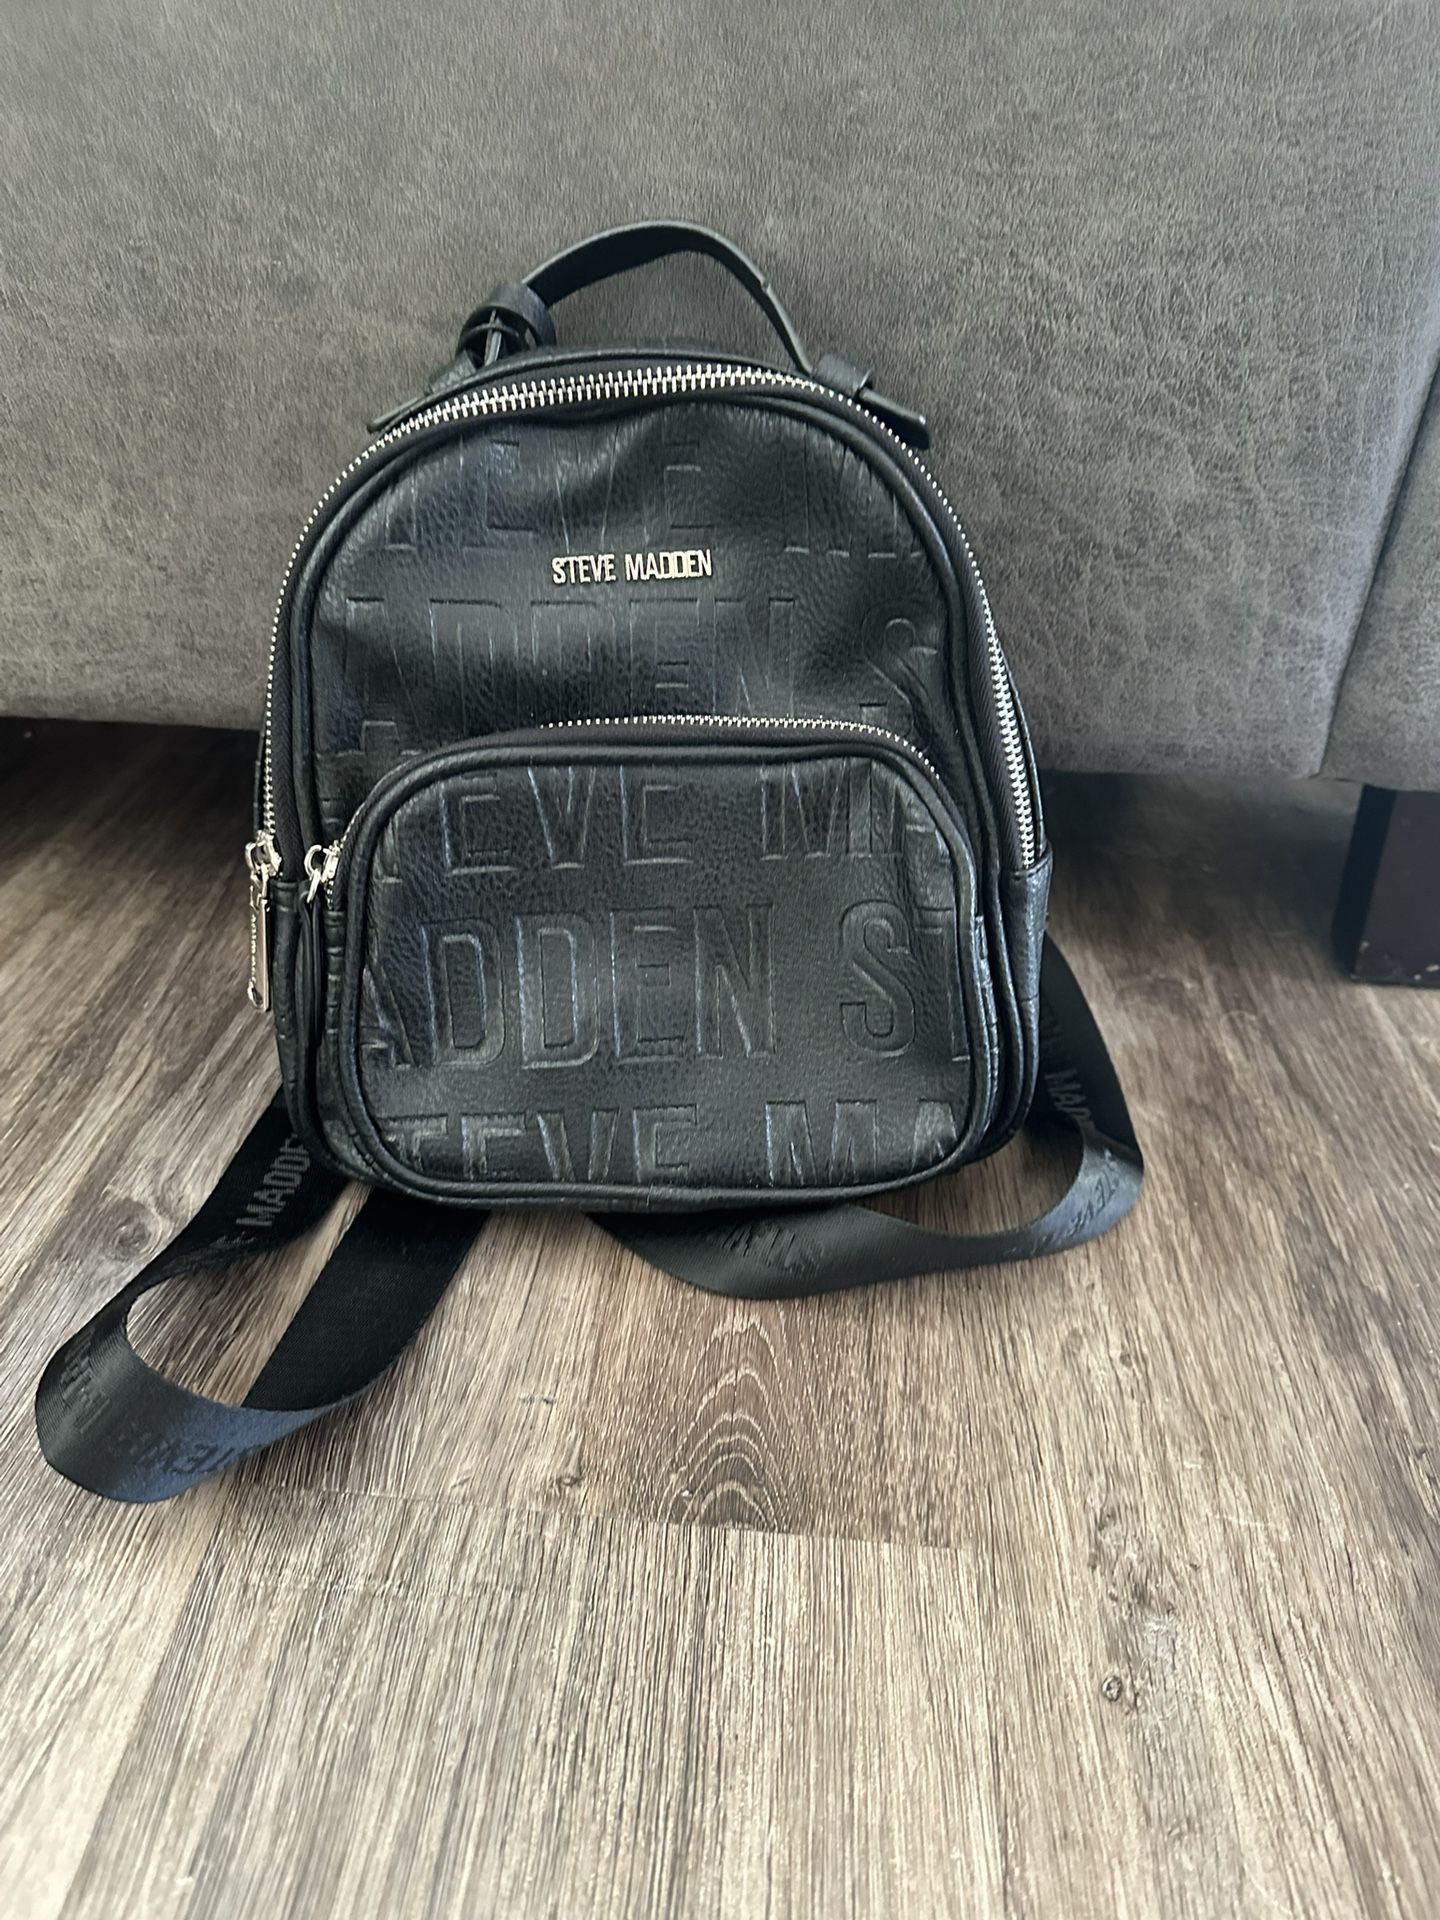 Steve Madden Mini Backpack- New